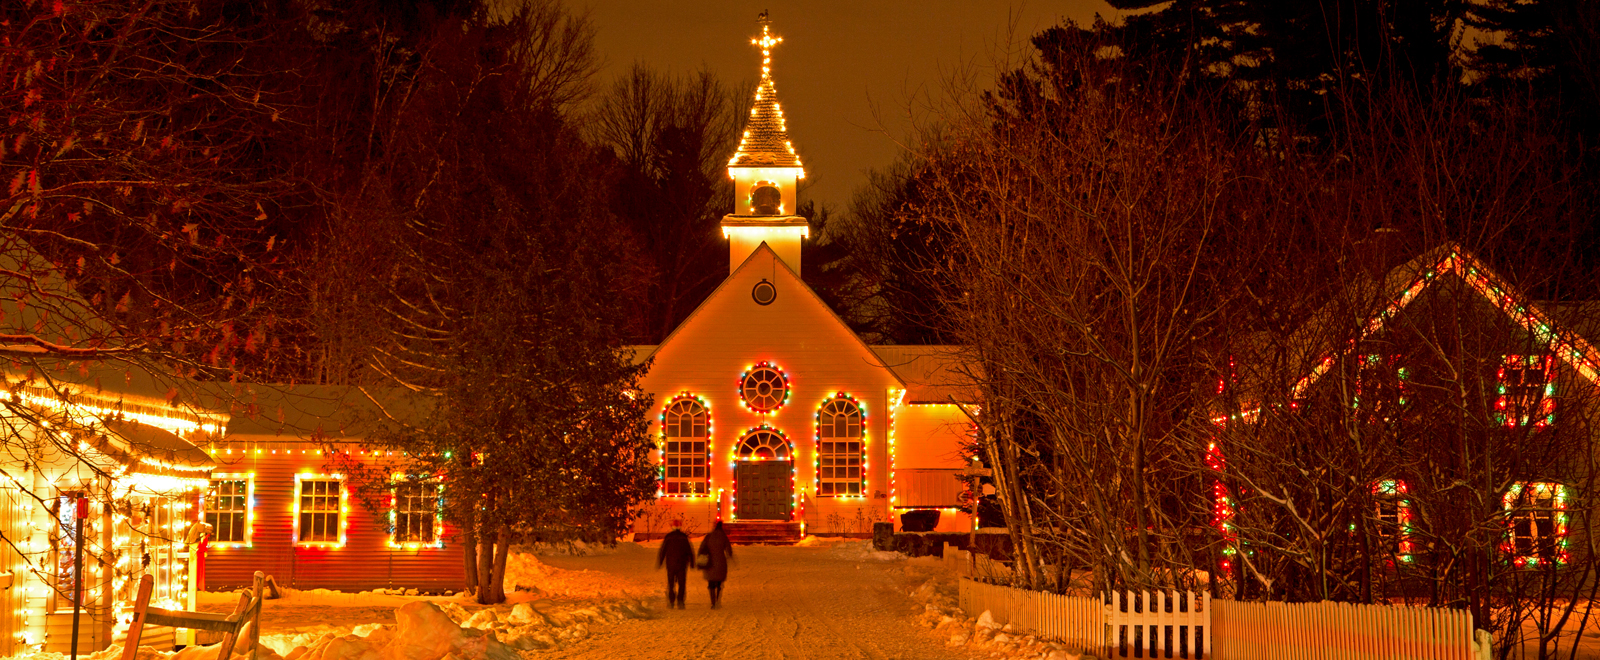 Vivez l'expérience d'un Noël traditionnel et découvrez le Village illuminé.